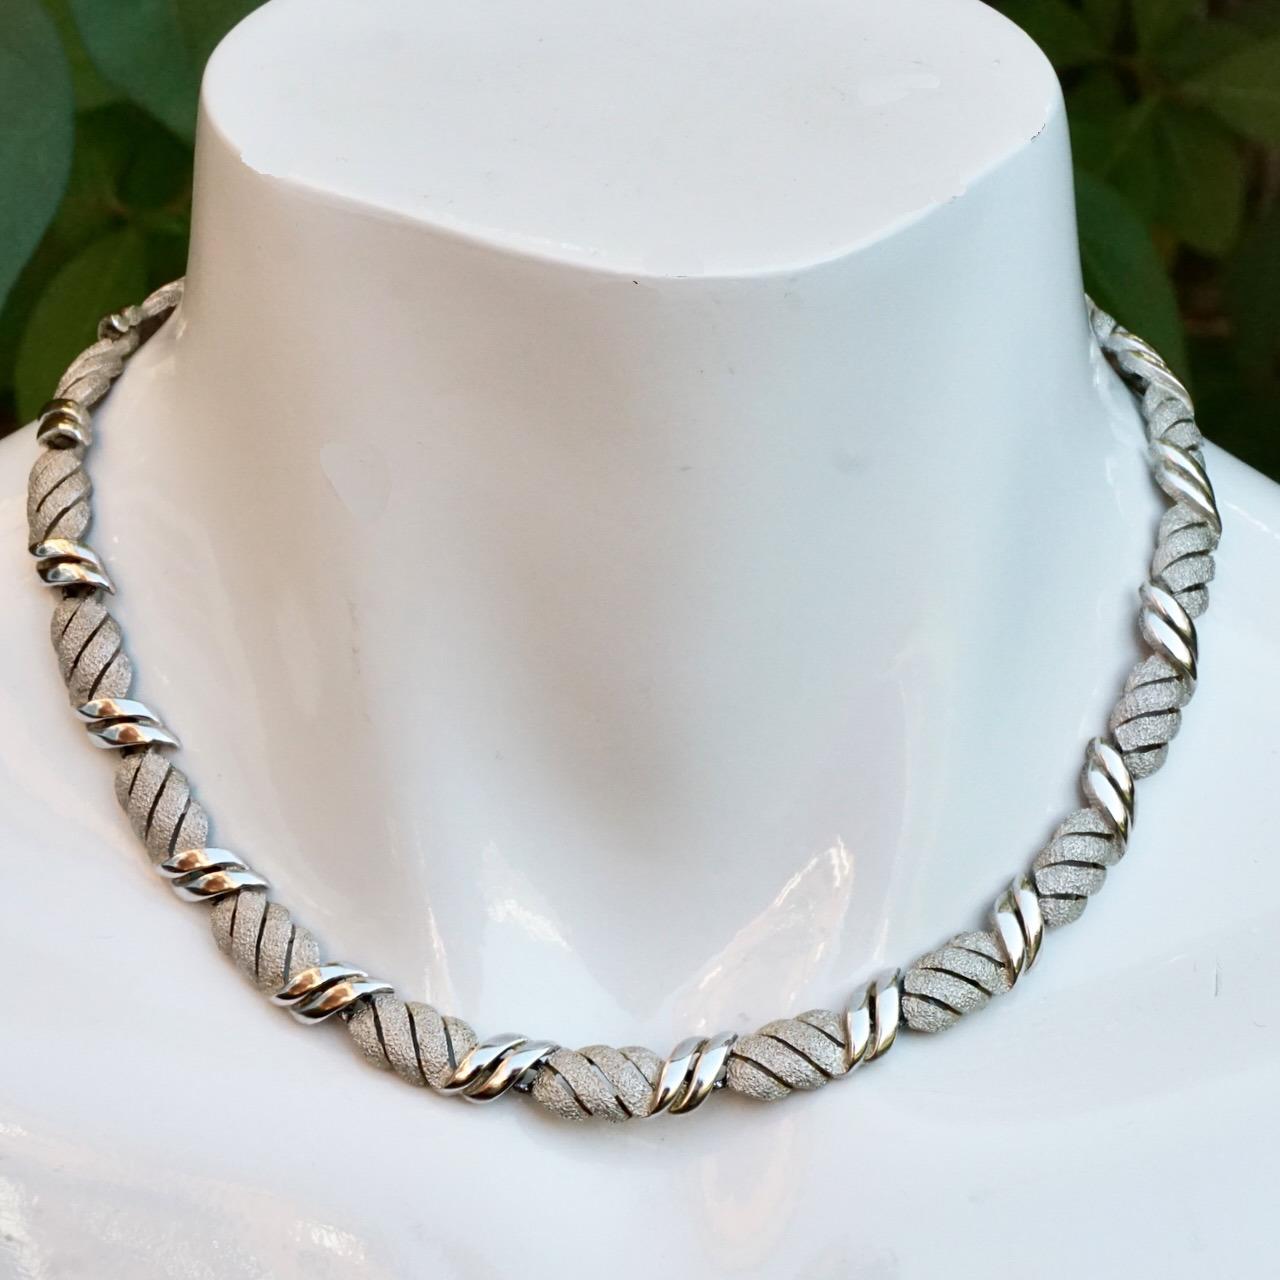 Schöne versilberte Trifari Halskette im gebürsteten und glänzenden Gliederdesign. Länge 39,7 cm / 15,6 Zoll bei einer Breite von 8 mm / .3 Zoll. Die Halskette hat einen doppelten Gliederverschluss, so dass ein Glied entfernt werden kann, um die